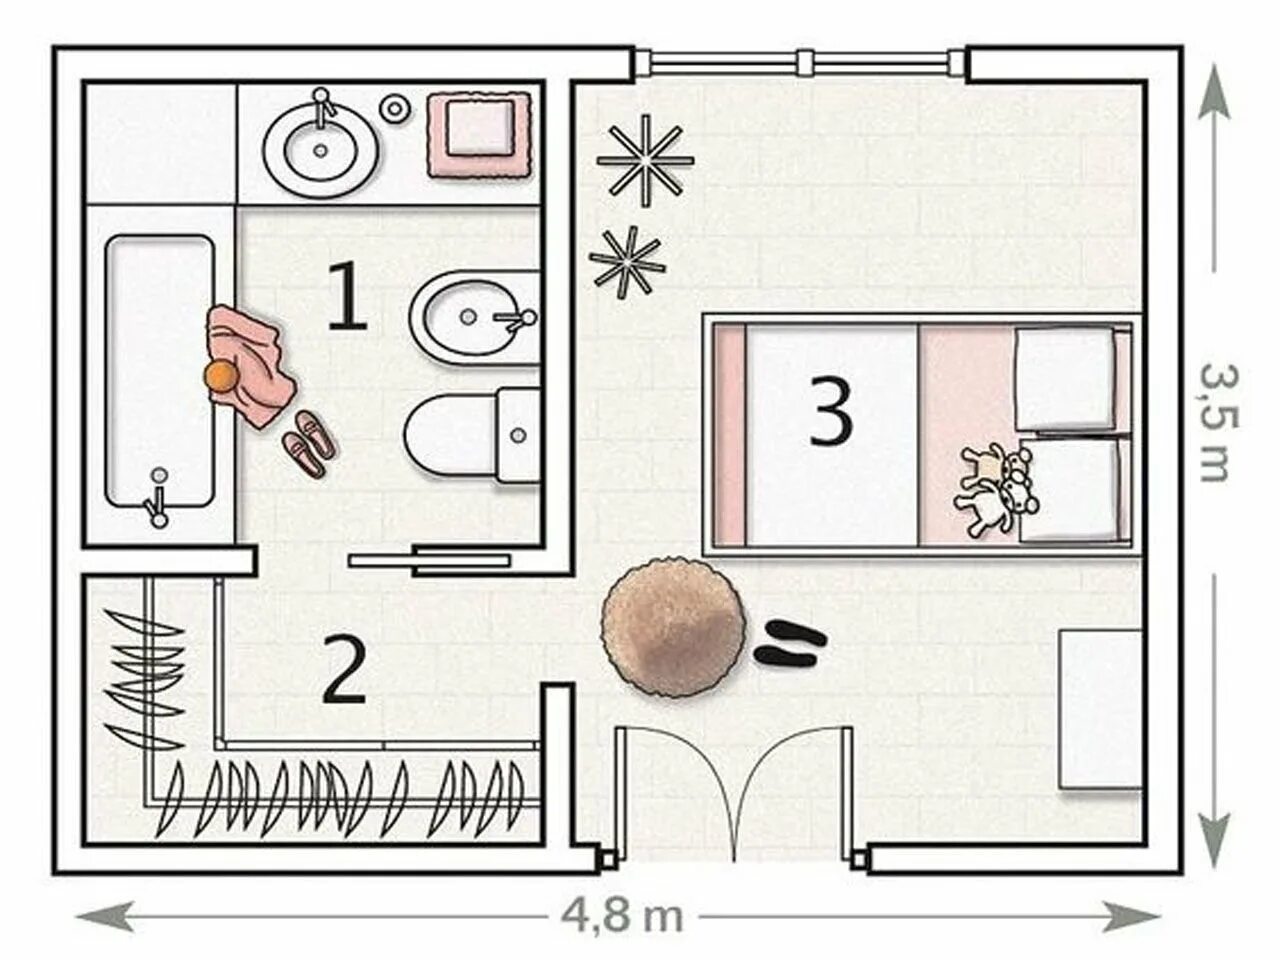 План квартиры комнаты. Схематичная планировка комнаты. Схематическое изображение квартиры. Схематический план комнаты. Планировка детской комнаты схема.